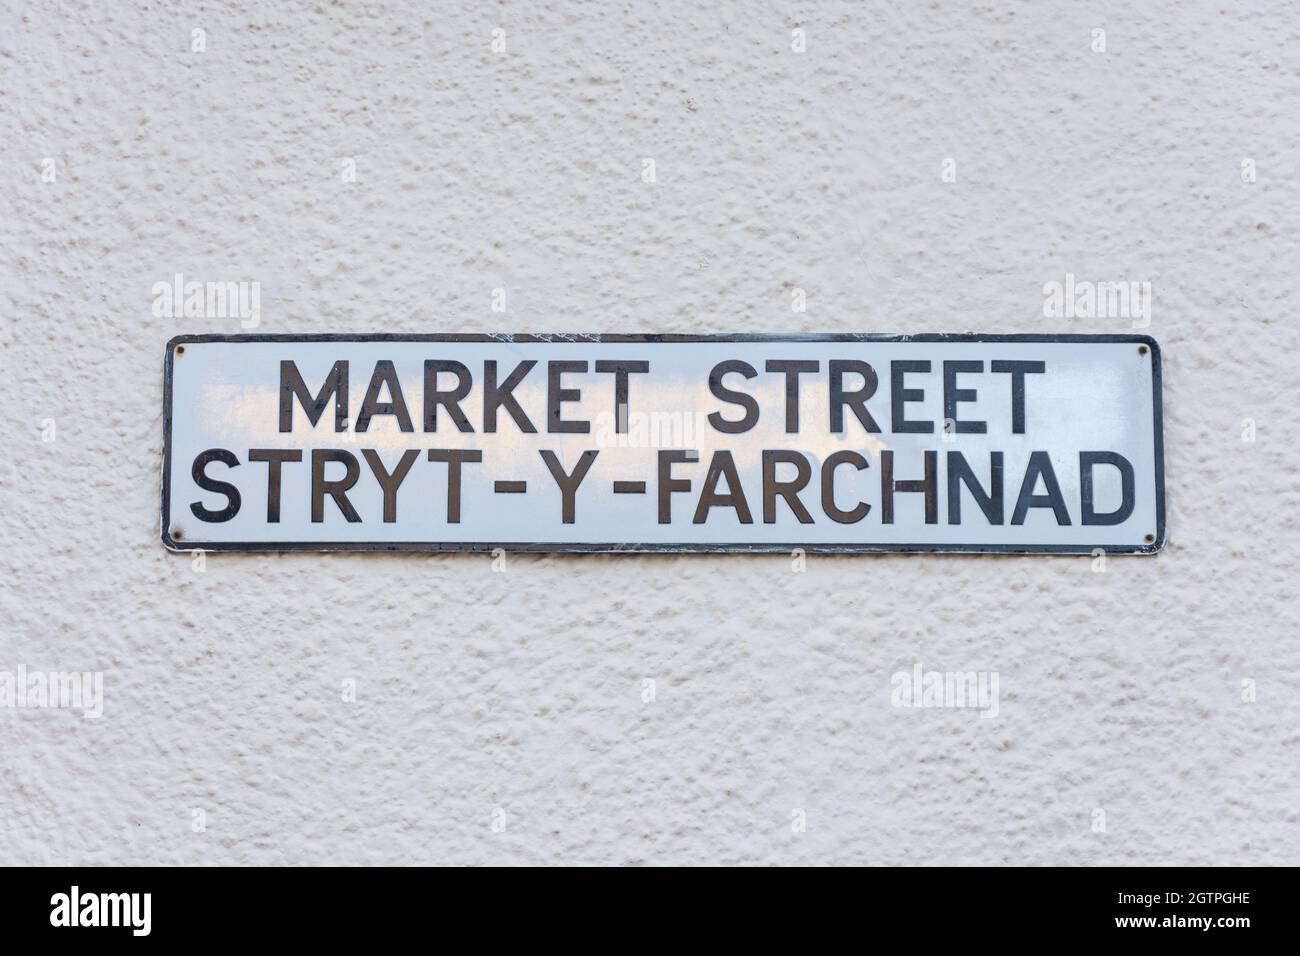 Panneau de rue en anglais et gallois, Market Street (Stryt-y-Farchnad), Ruthin (Rhuthun), Denbighshire (Sir Ddinbych), pays de Galles, Royaume-Uni Banque D'Images